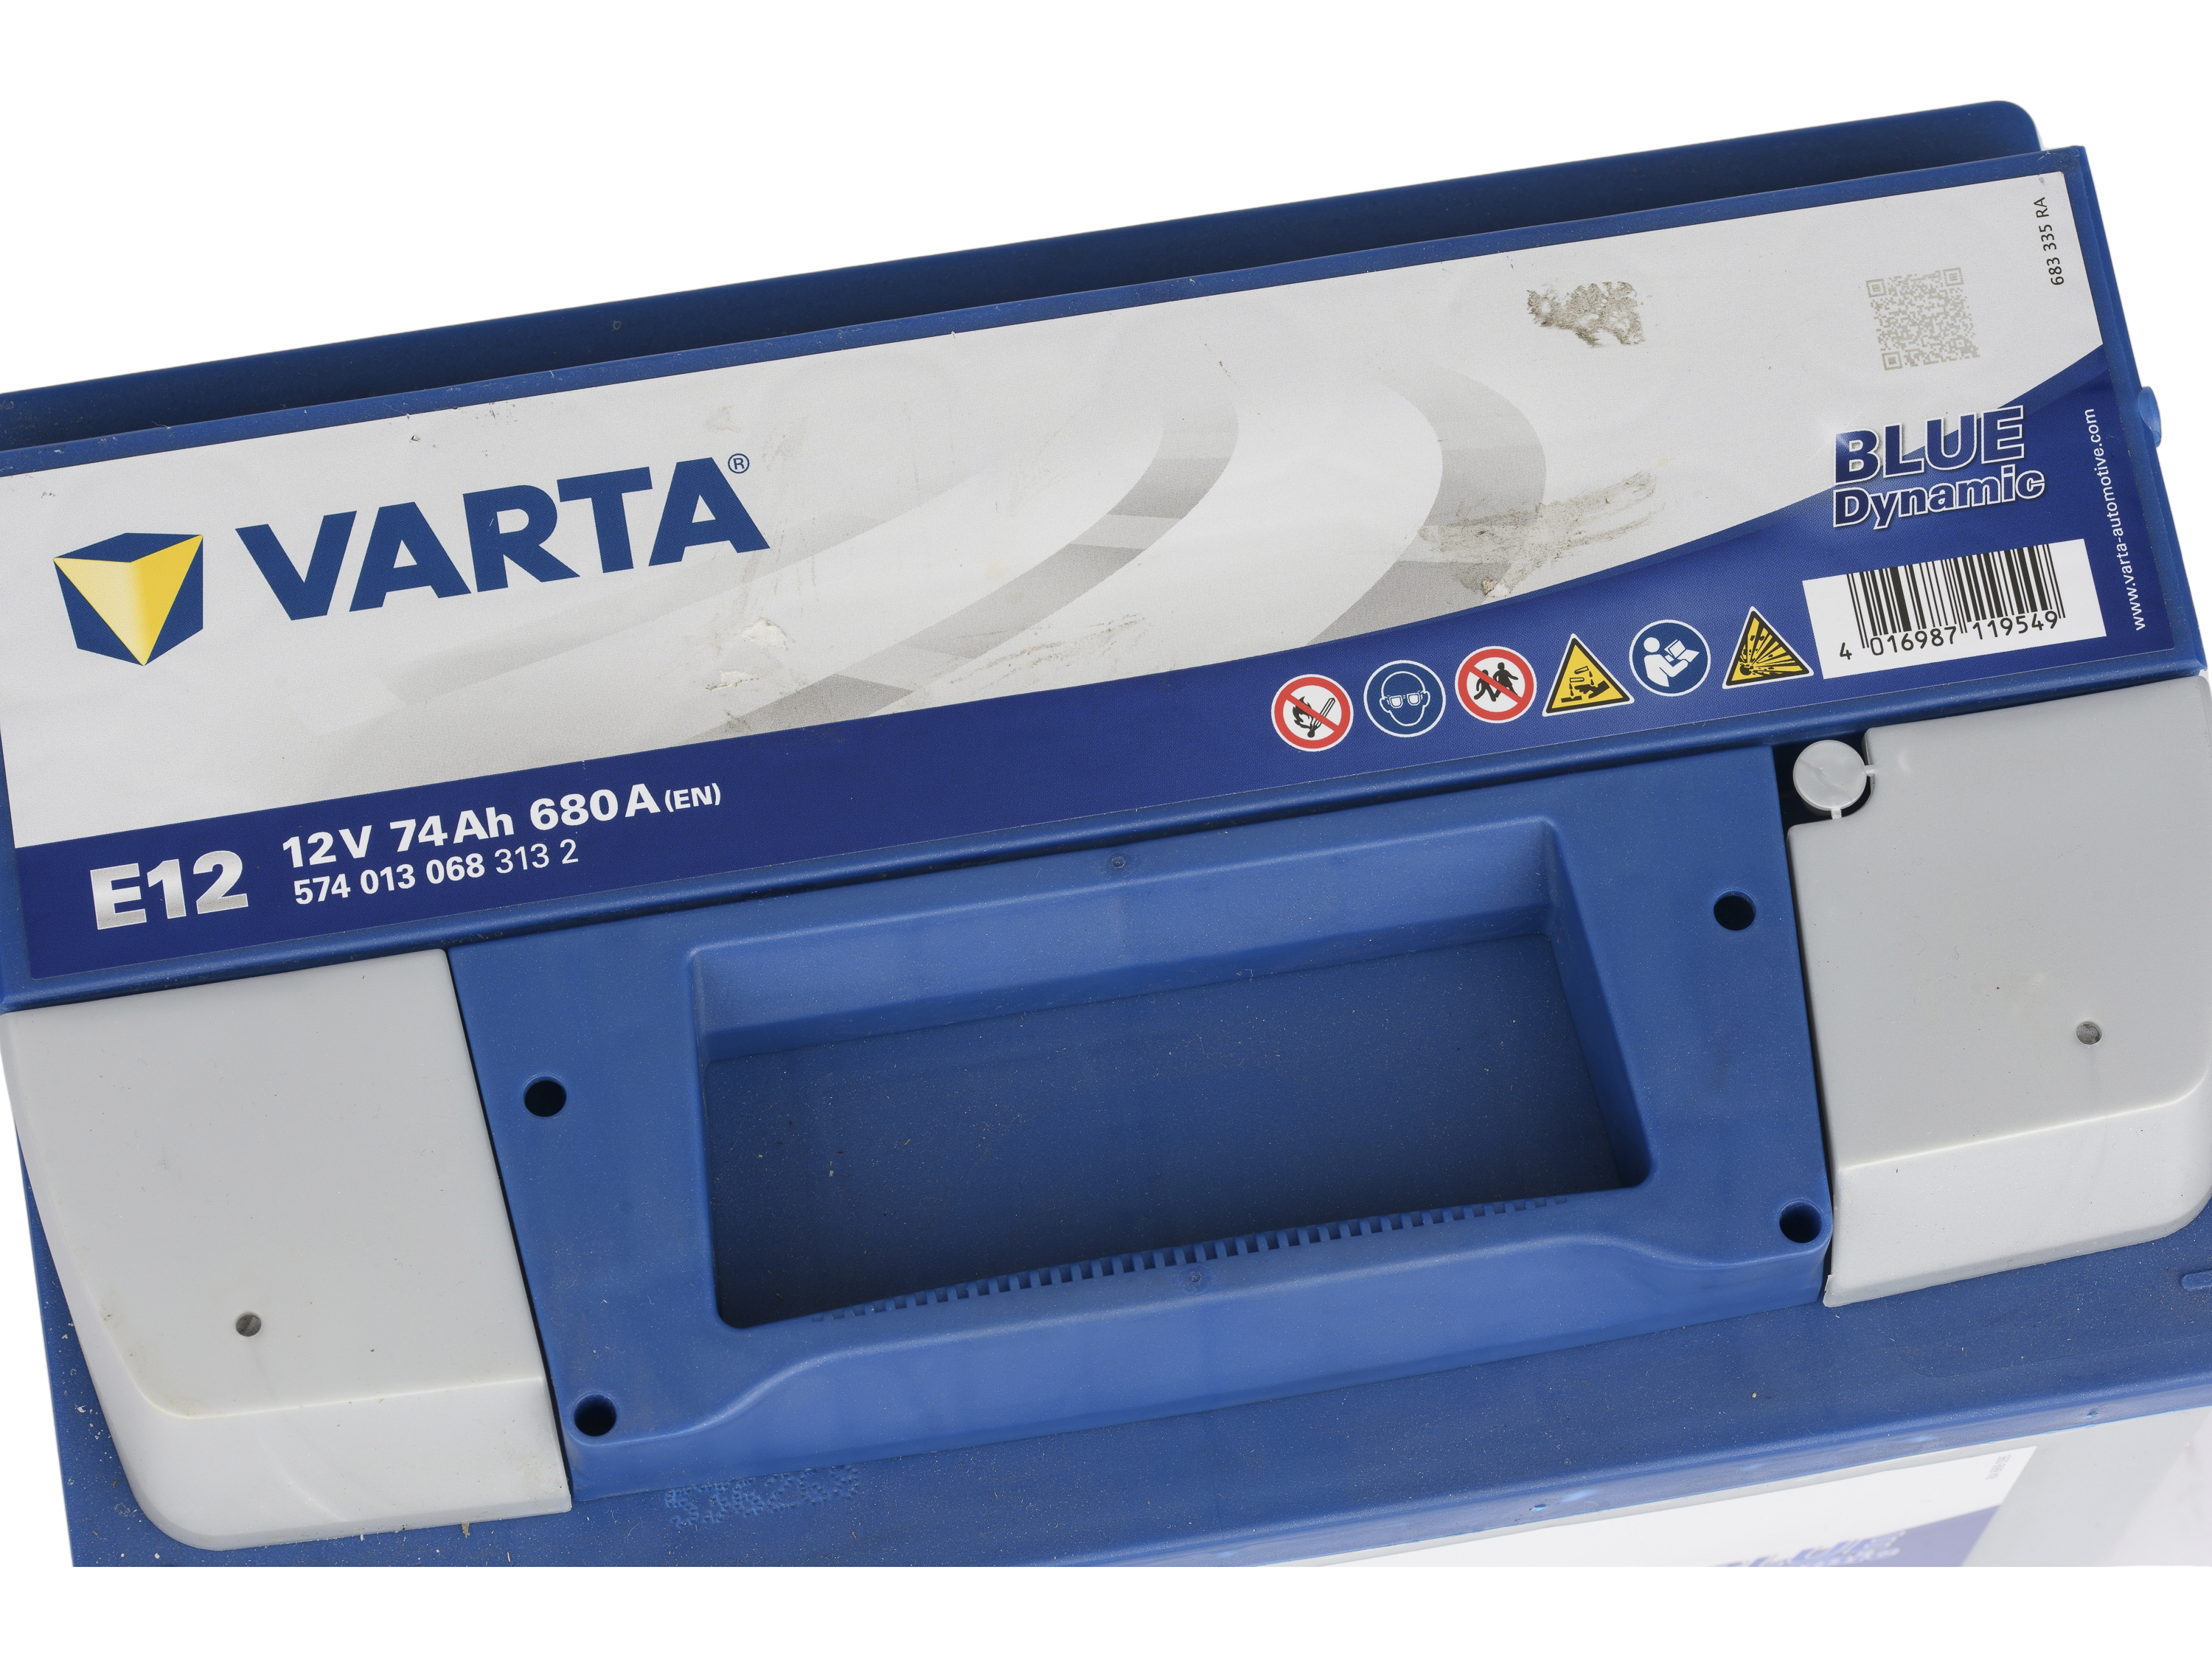 Bateria VARTA Blue Dynamic E12 - 12V 74 AH - 574.013.068